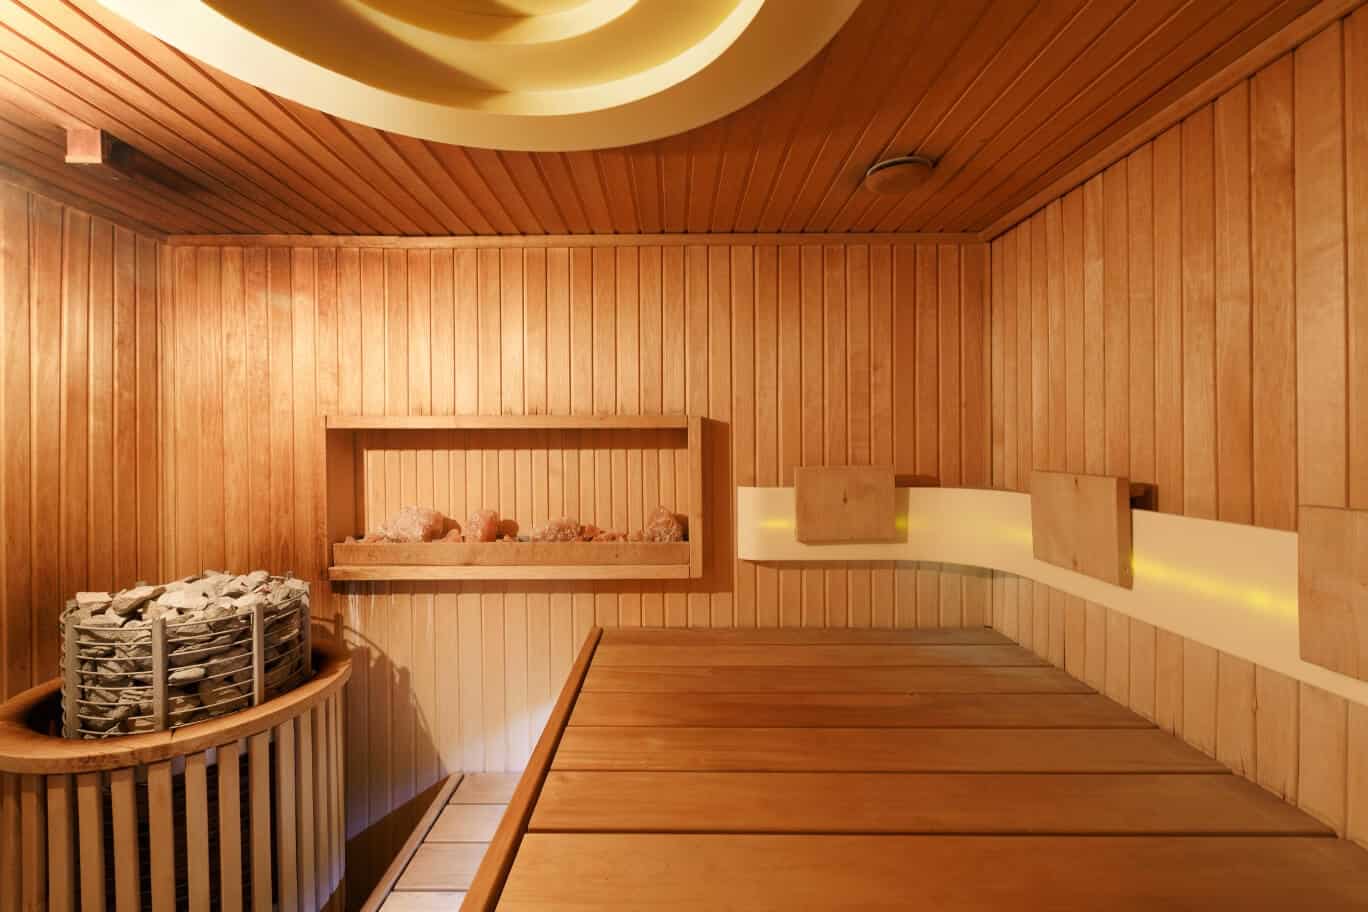 Sauna-Kabine von innen mit Licht und Ofen